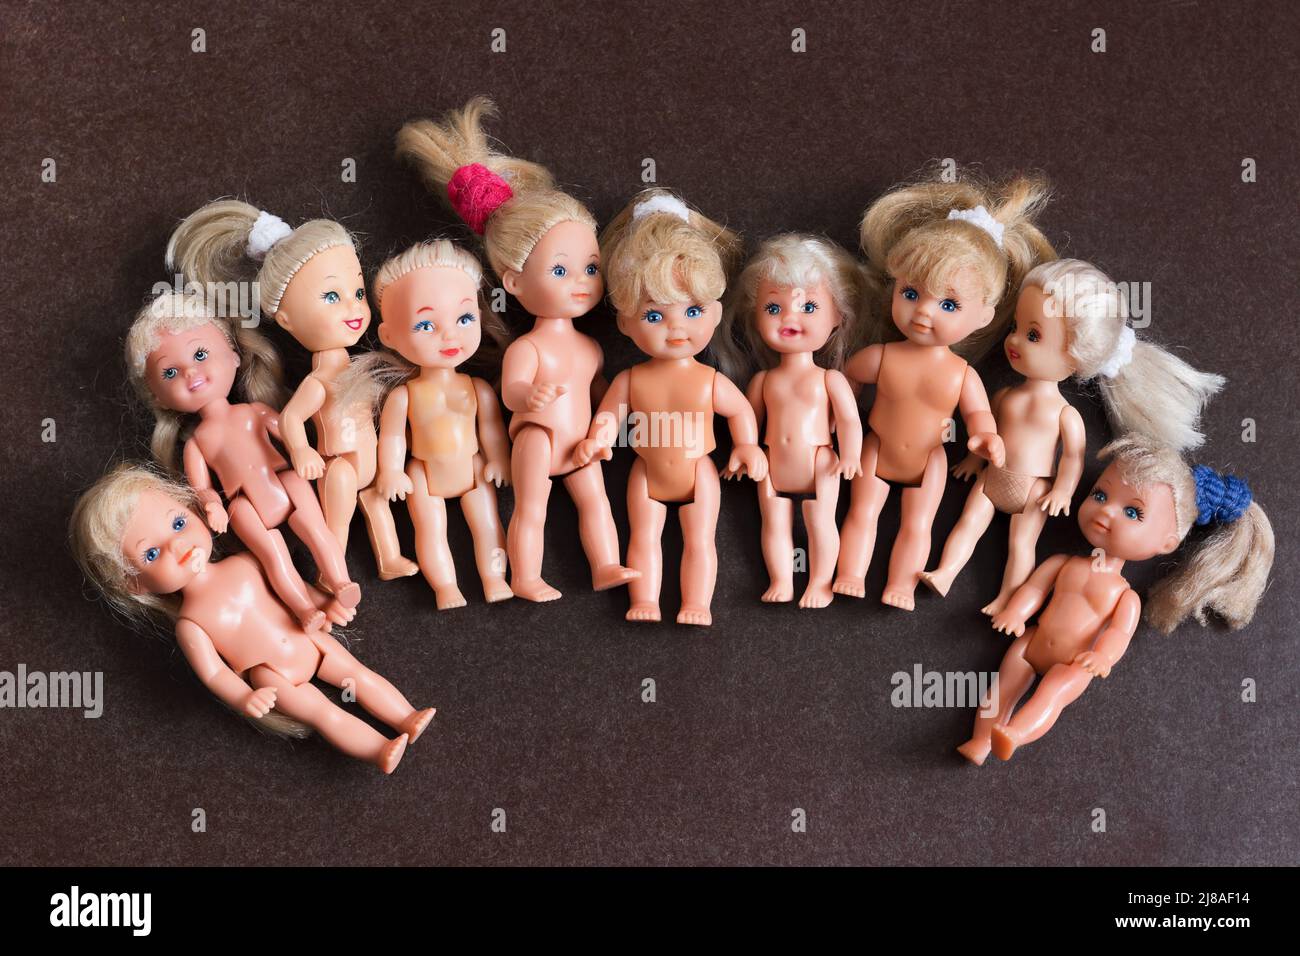 Colección de las muñecas de juguete Simba y otras sobre fondo oscuro Foto de stock